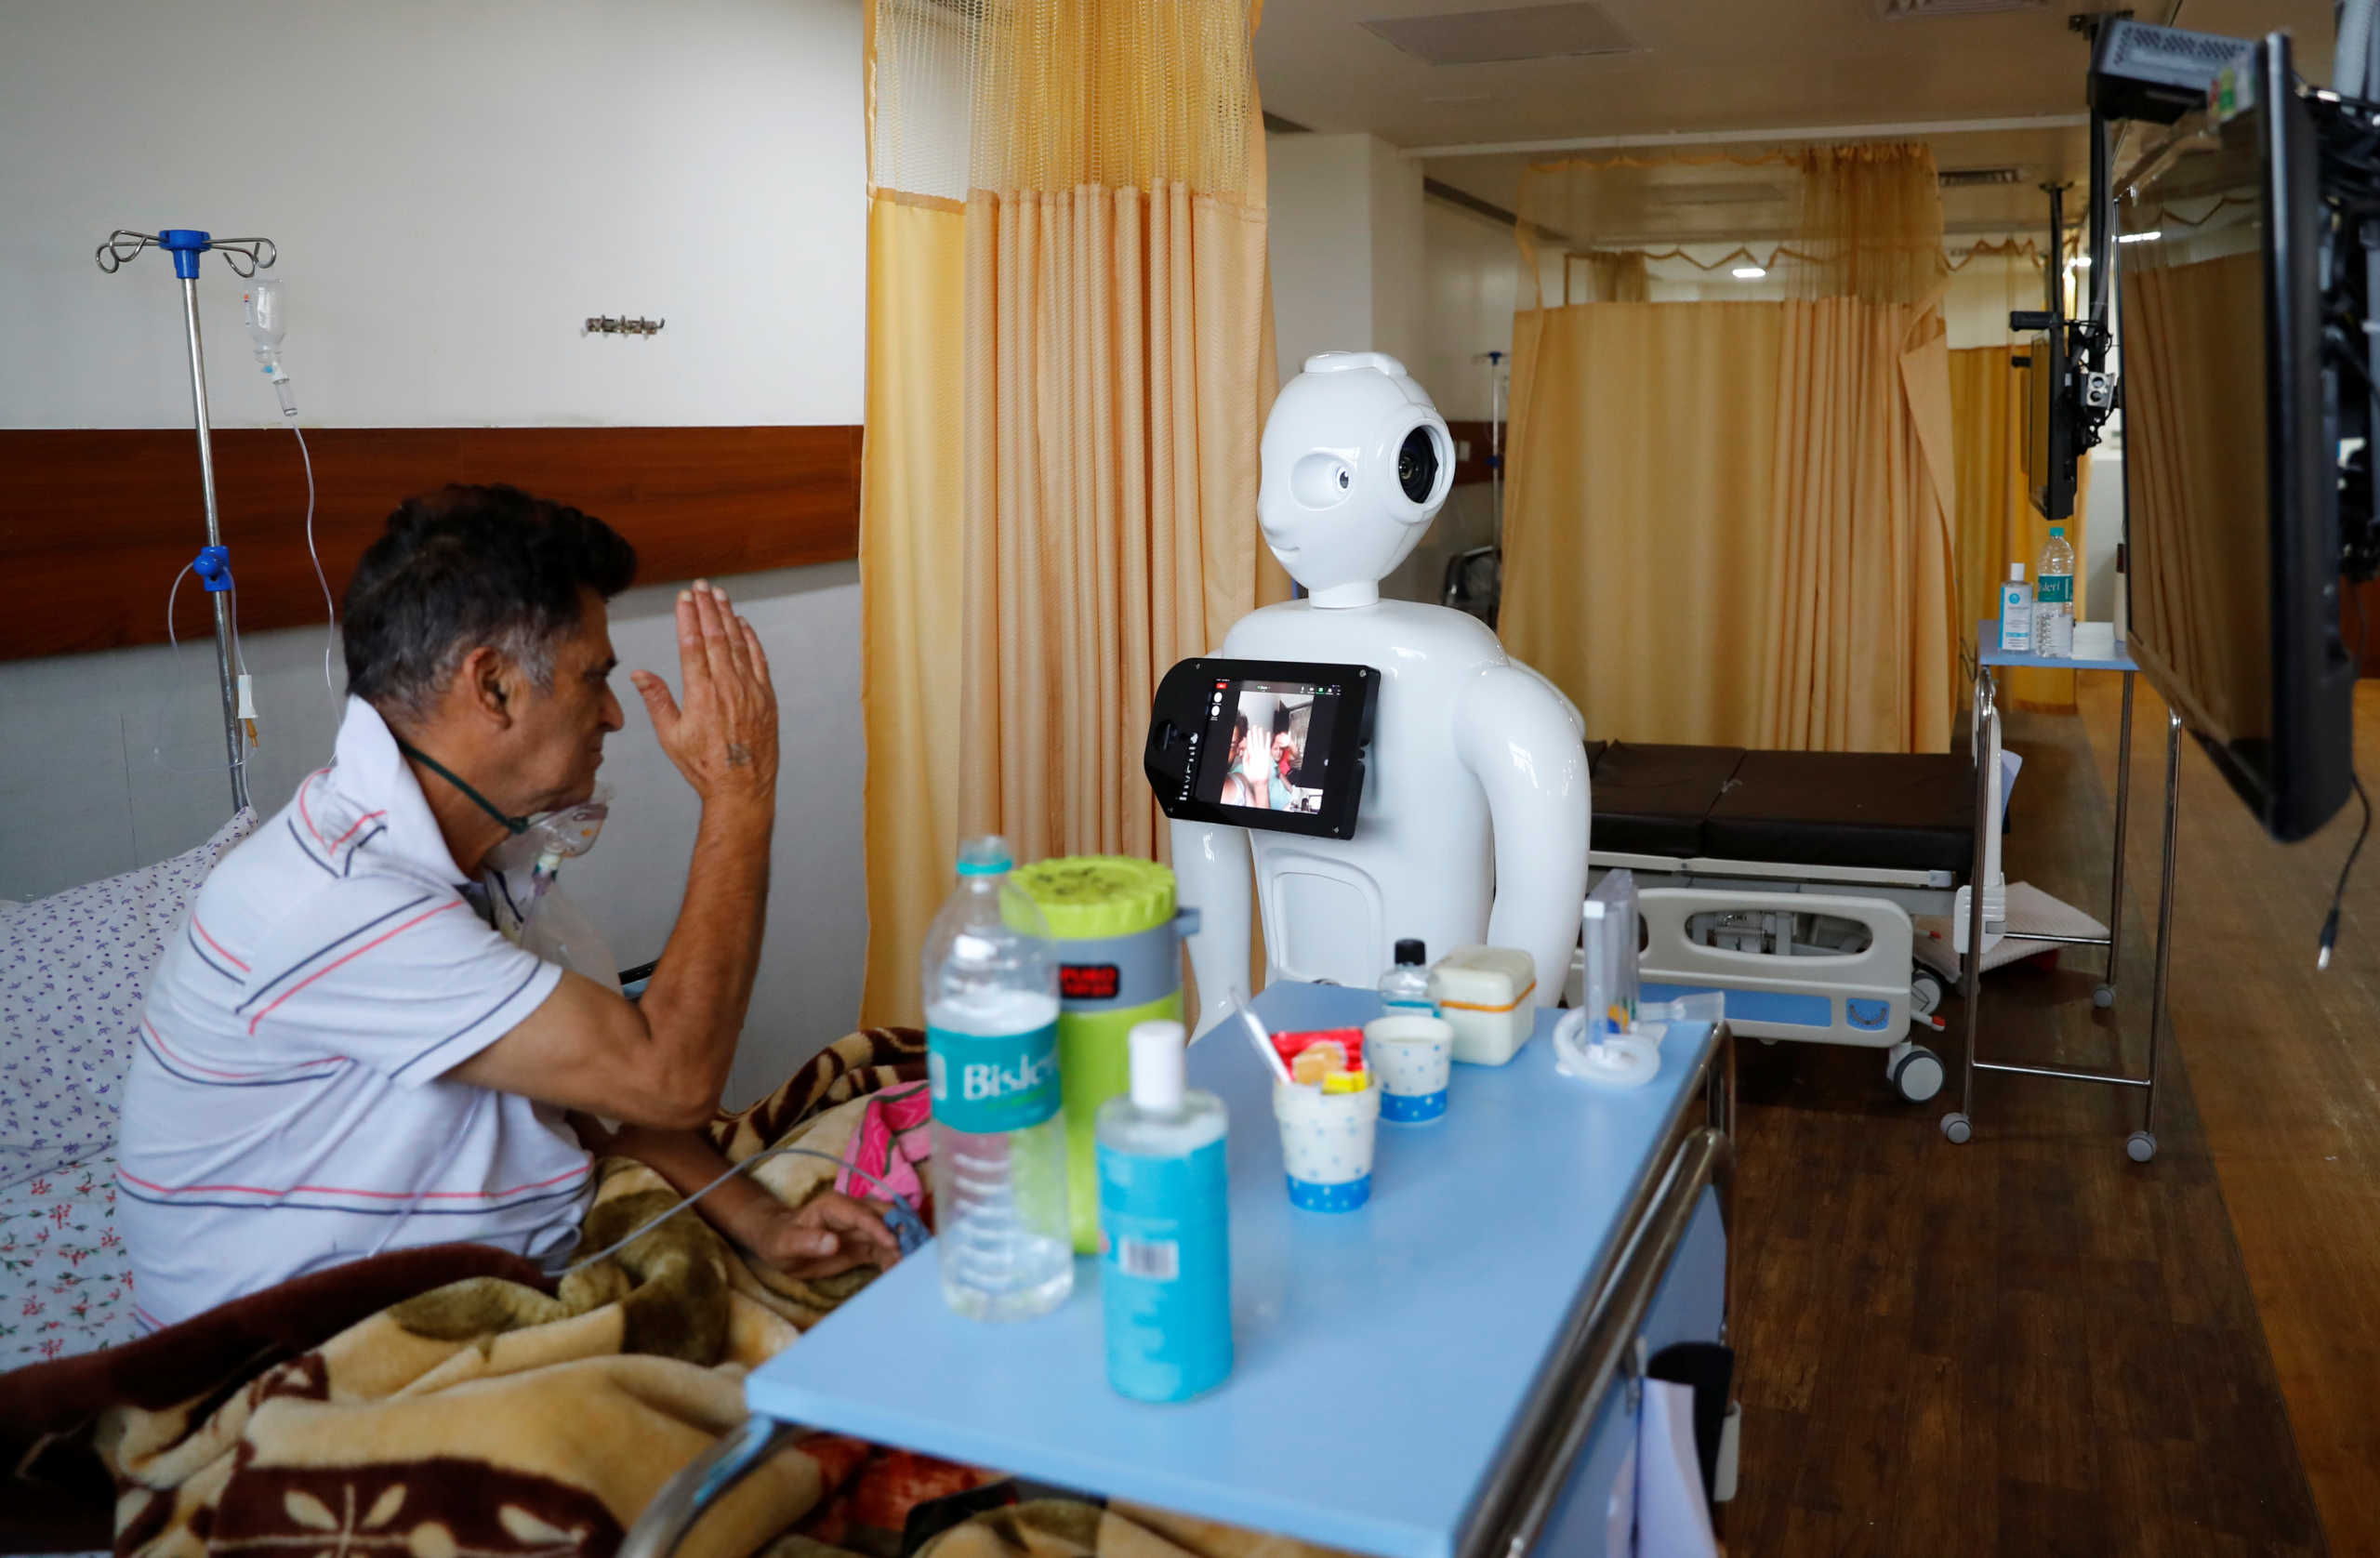 Συγκινητικές στιγμές: Ασθενείς με κορονοϊό επικοινωνούν με τους δικούς τους χάρη στο ρομπότ Μίτρα (pics)